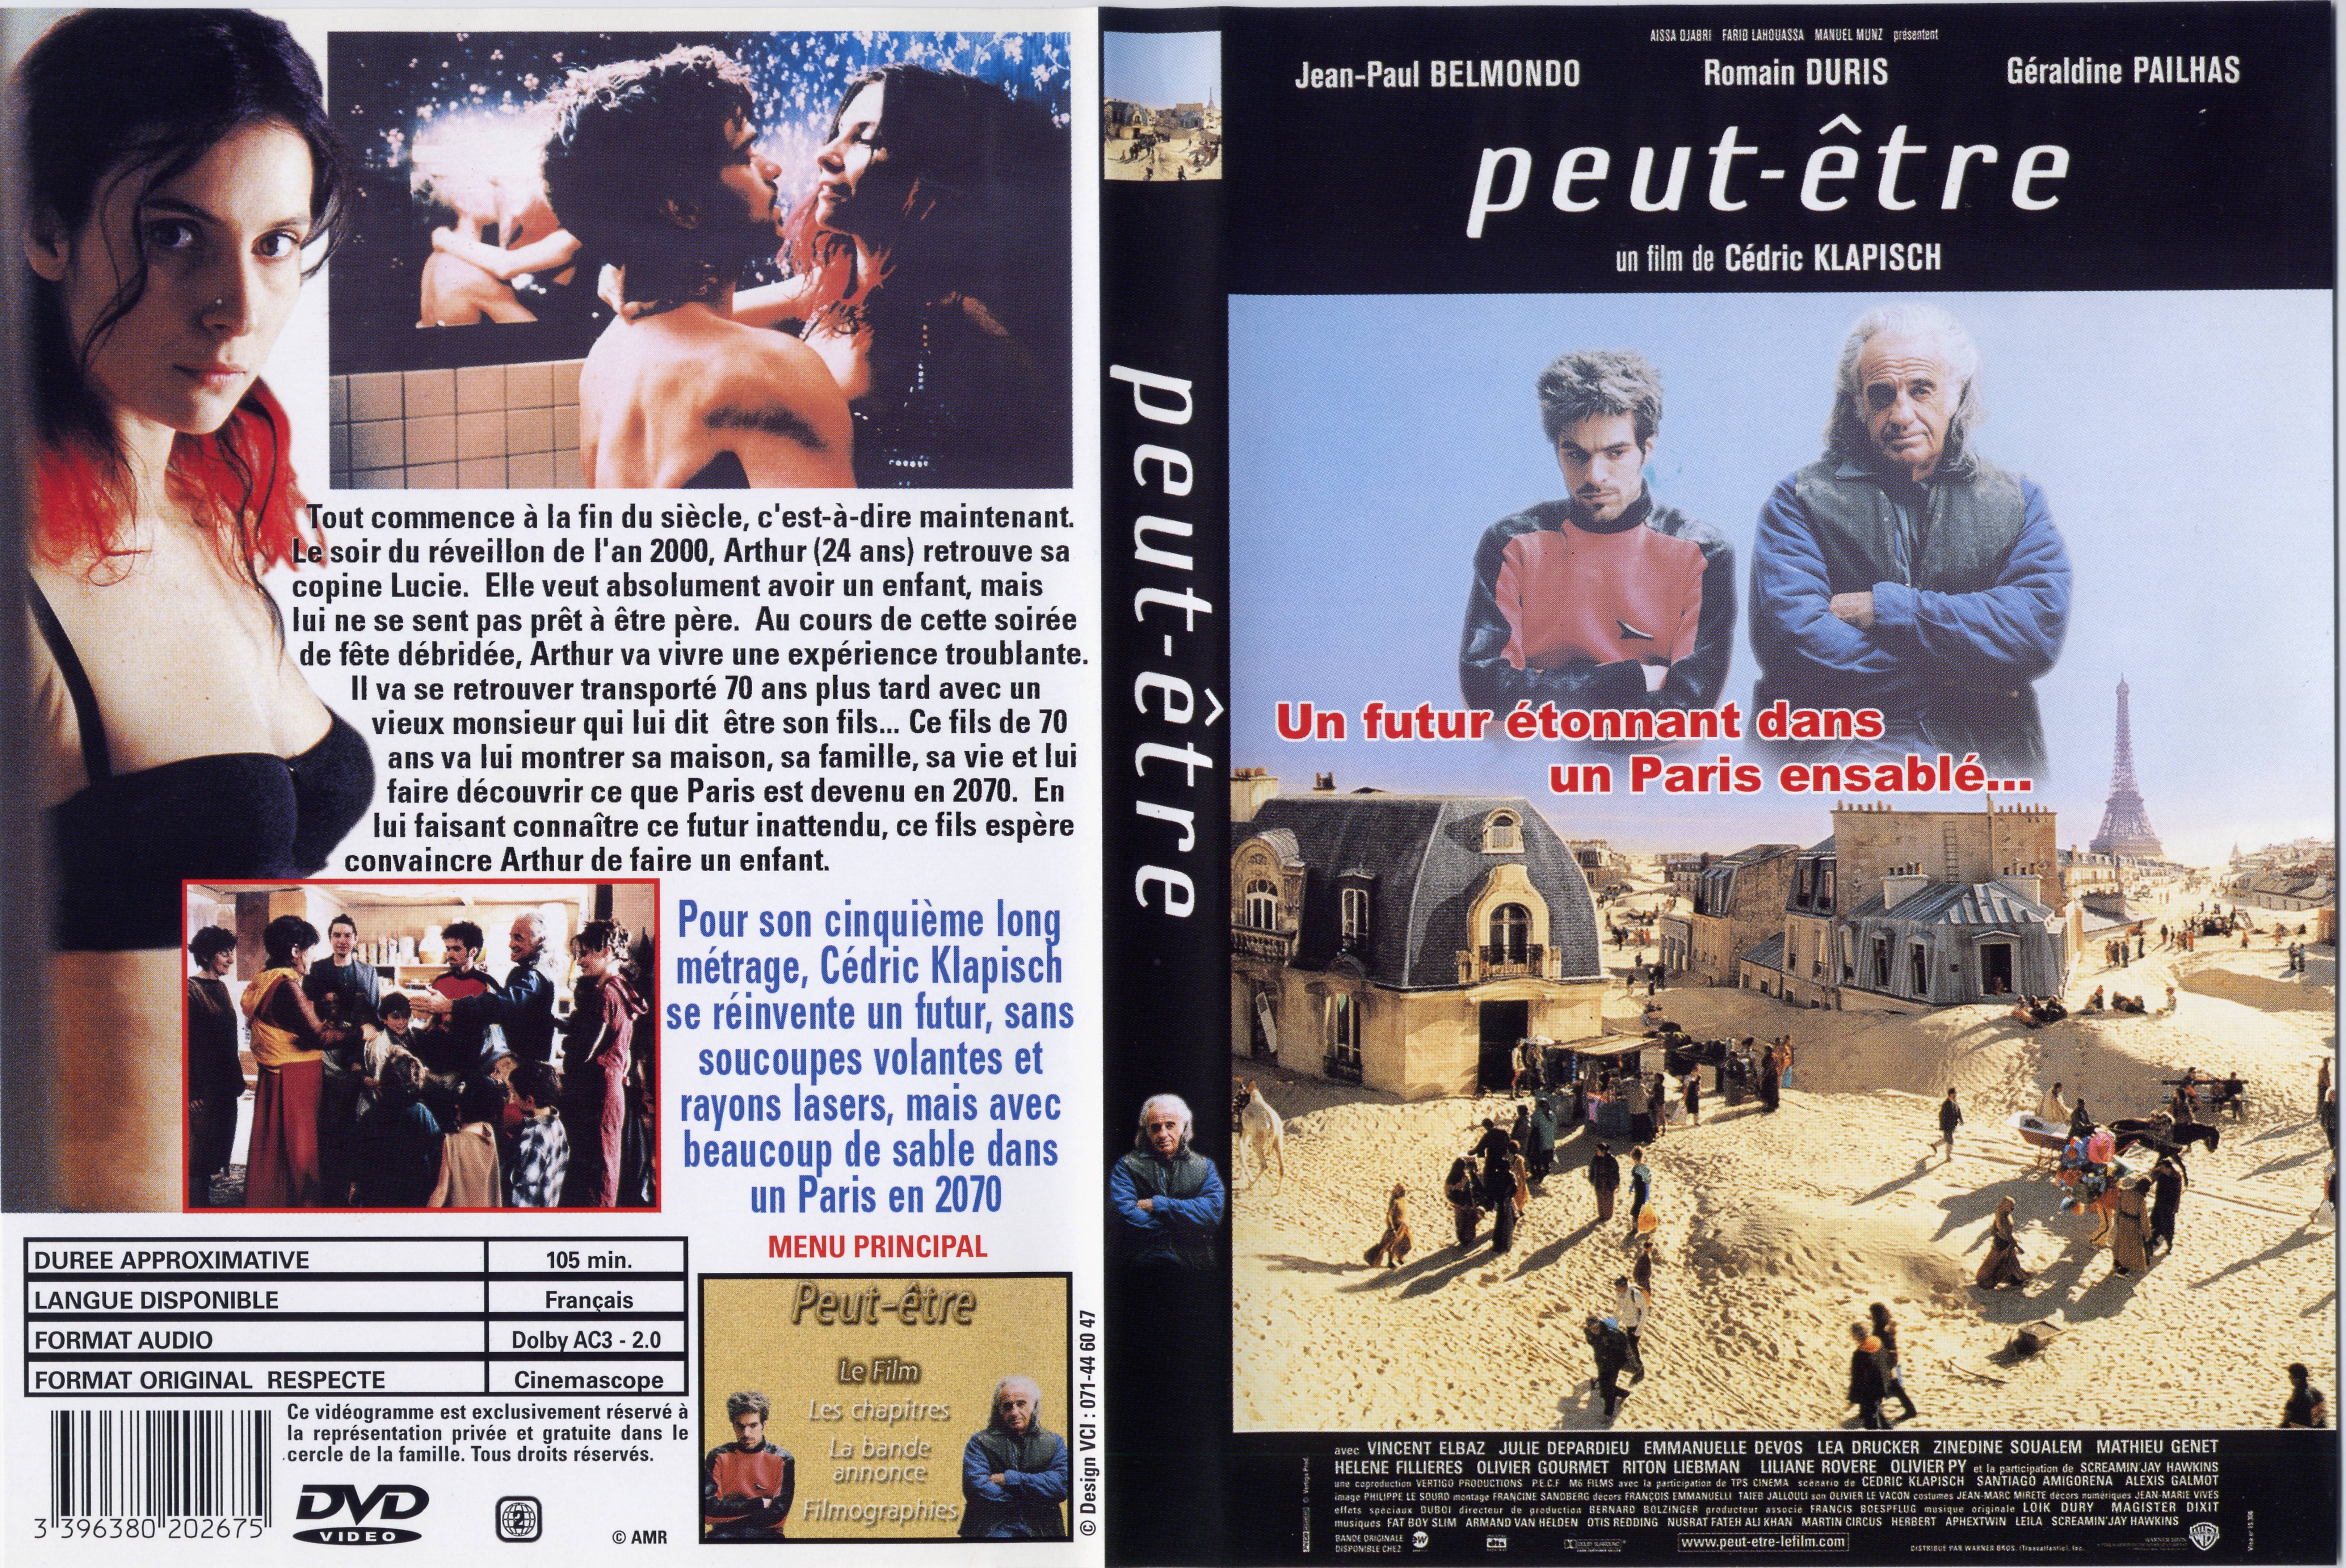 Jaquette DVD Peut-etre v2